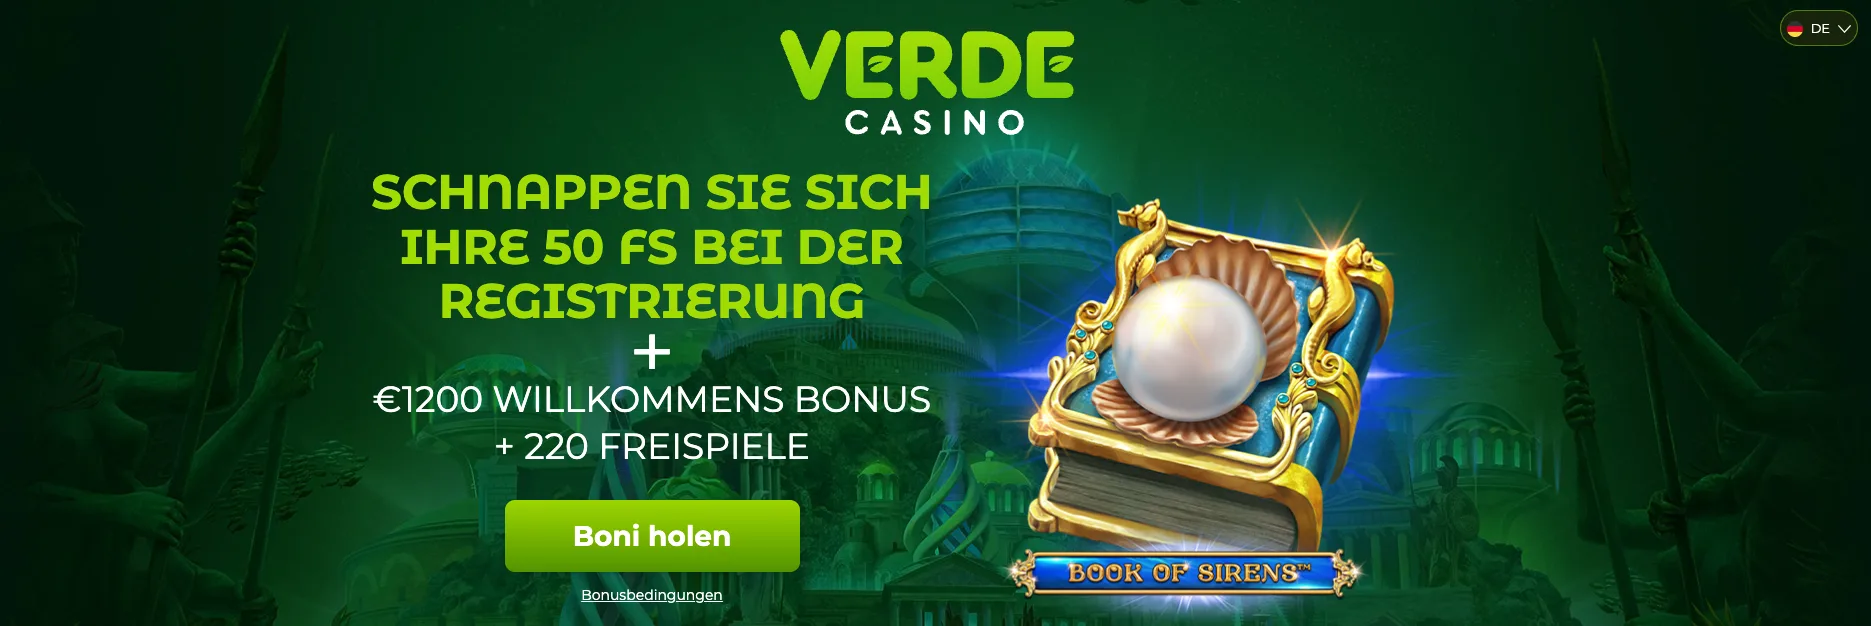 Im Verde Casino gibt es 50 Freispiele ohne Einzahlung